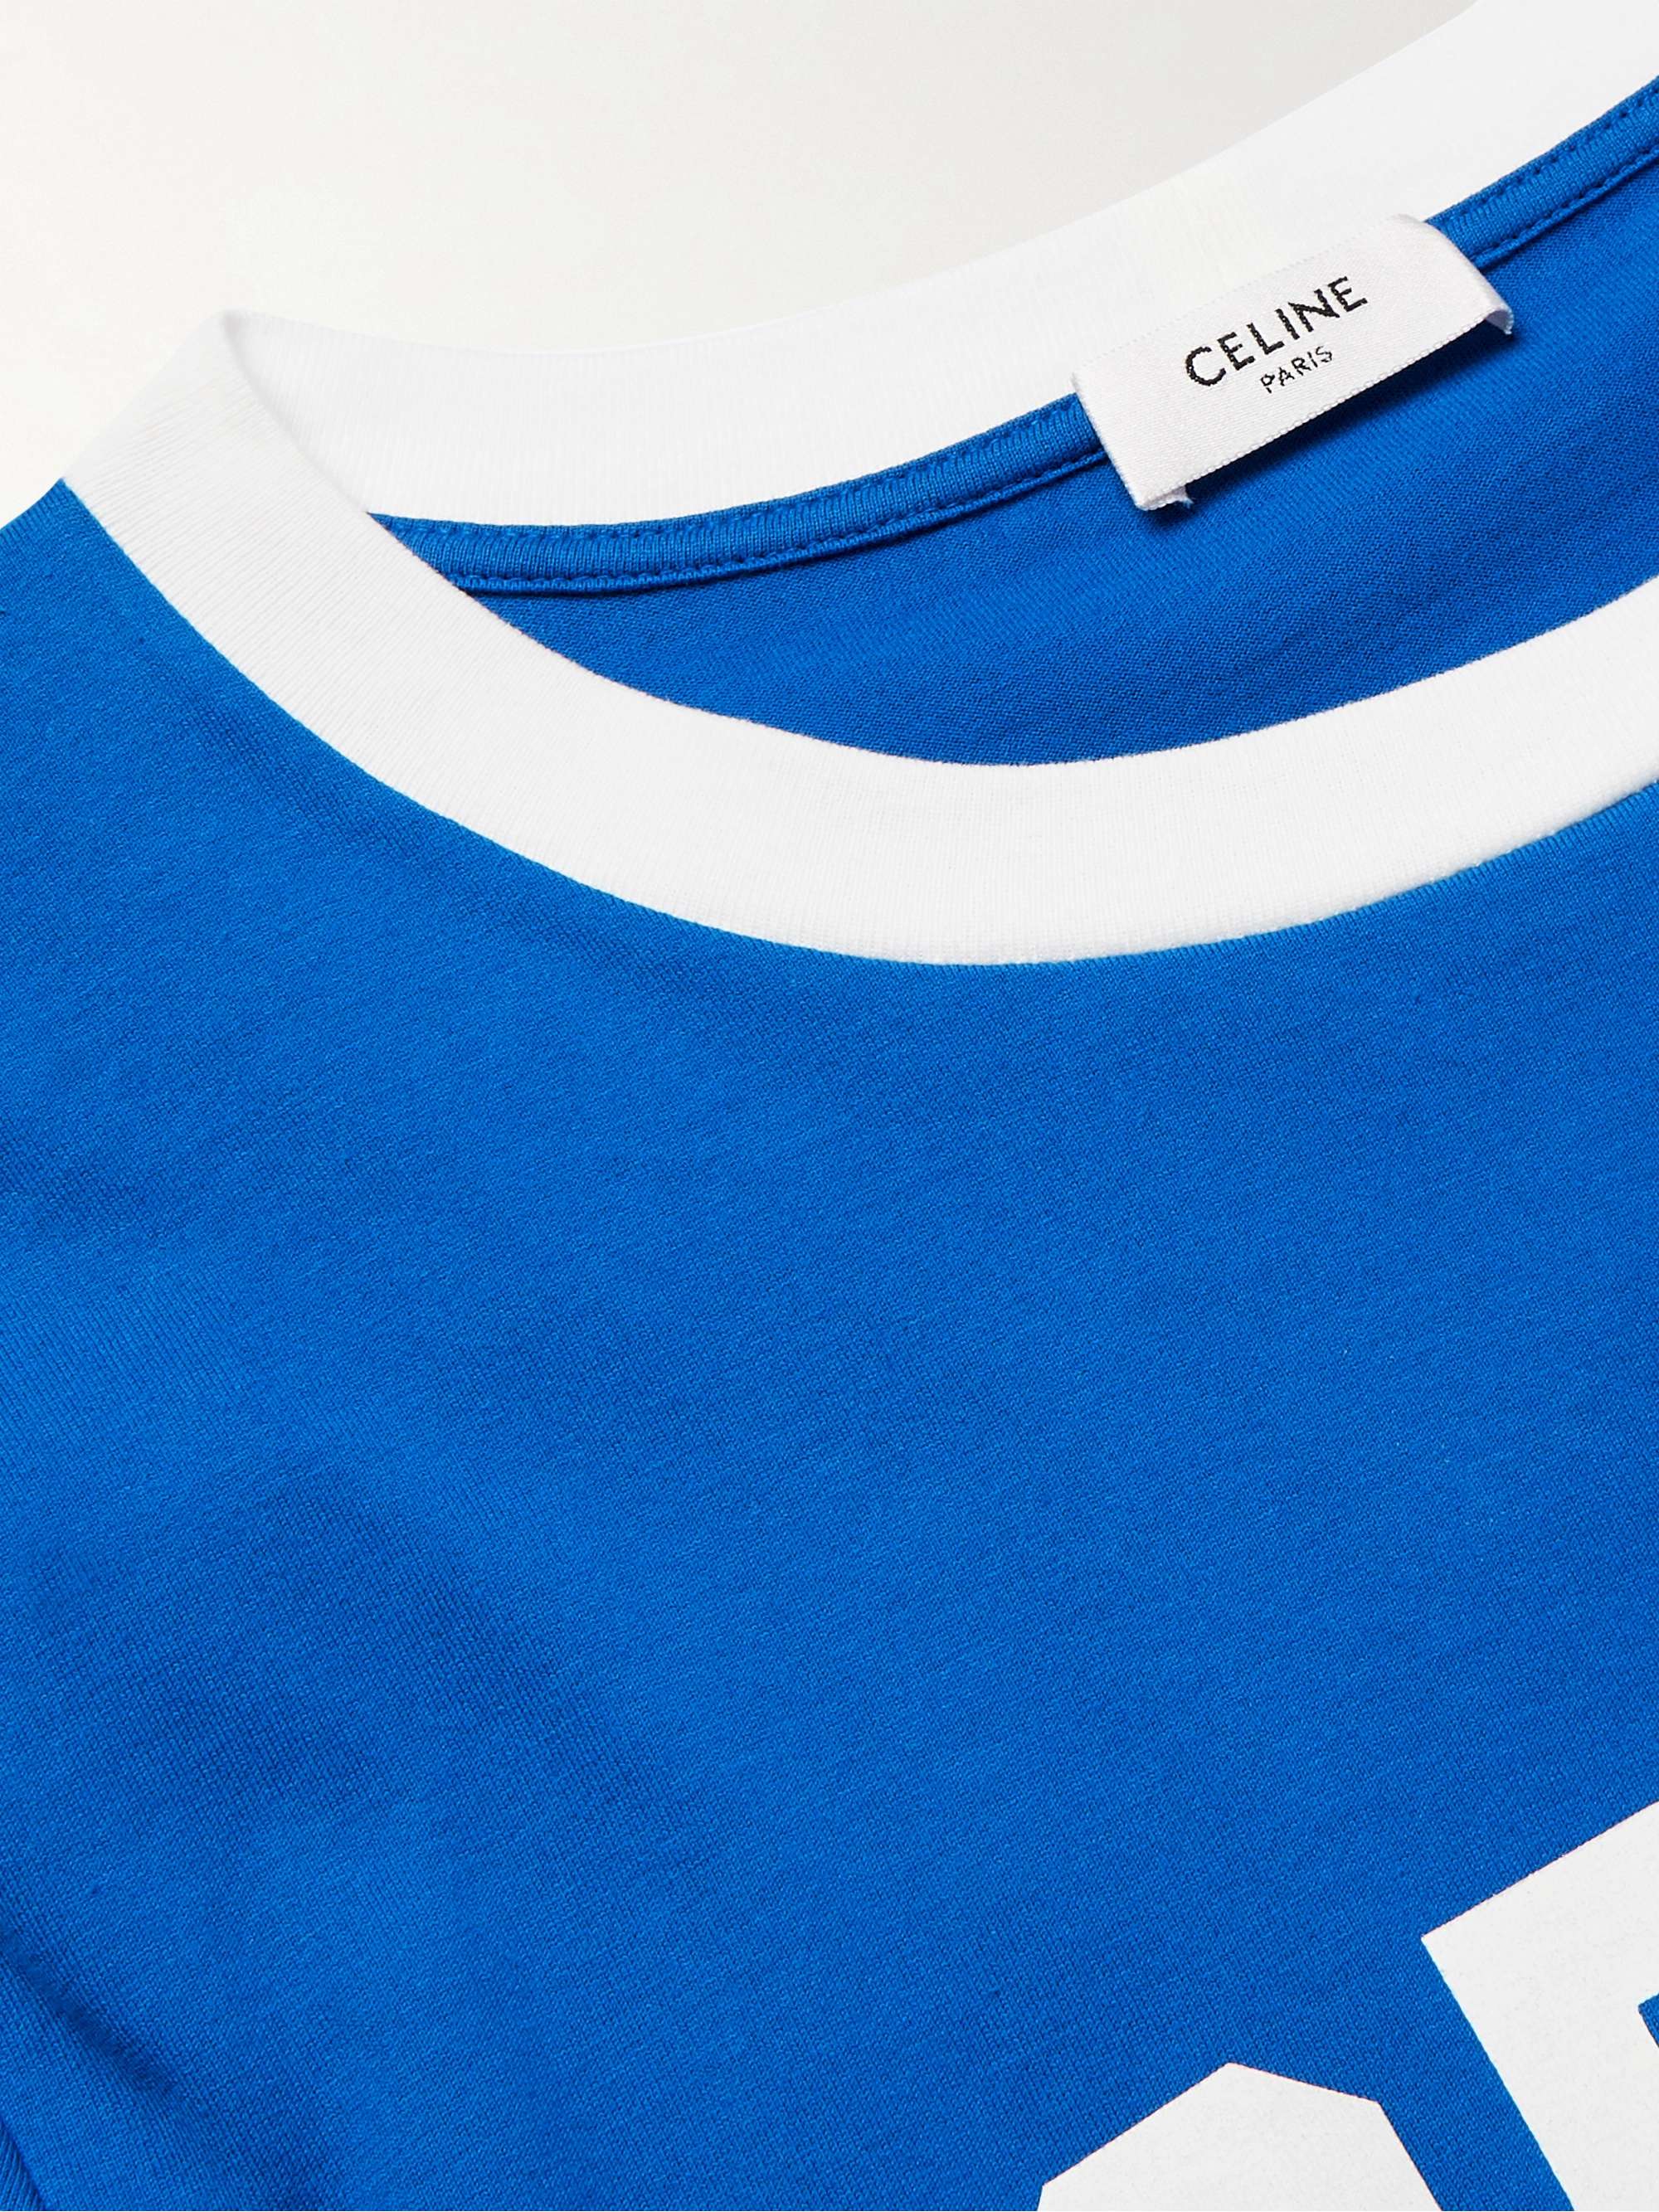 CELINE HOMME Slim-Fit Logo-Print Cotton-Jersey T-Shirt